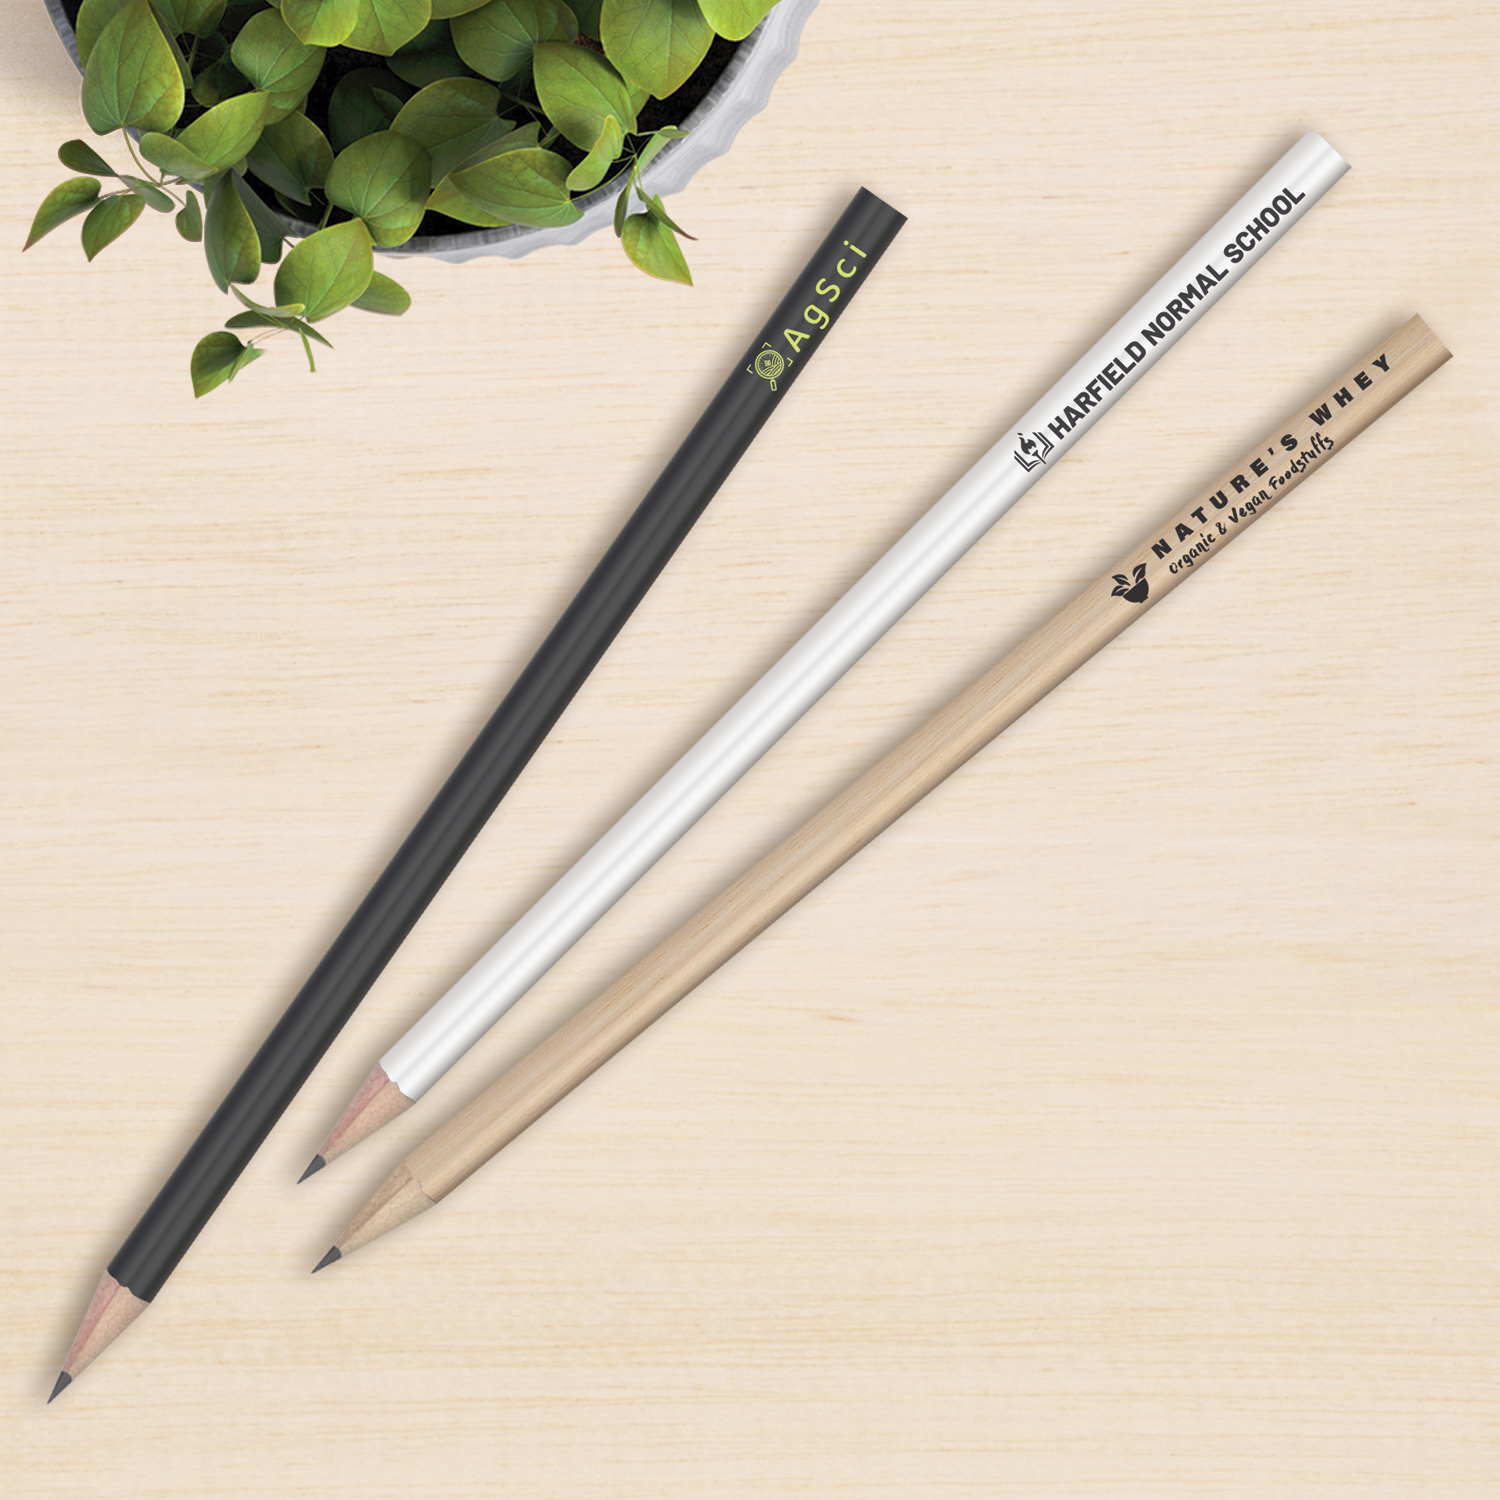 HB Pencil | Branded HB Pencil | Printed HB Pencil